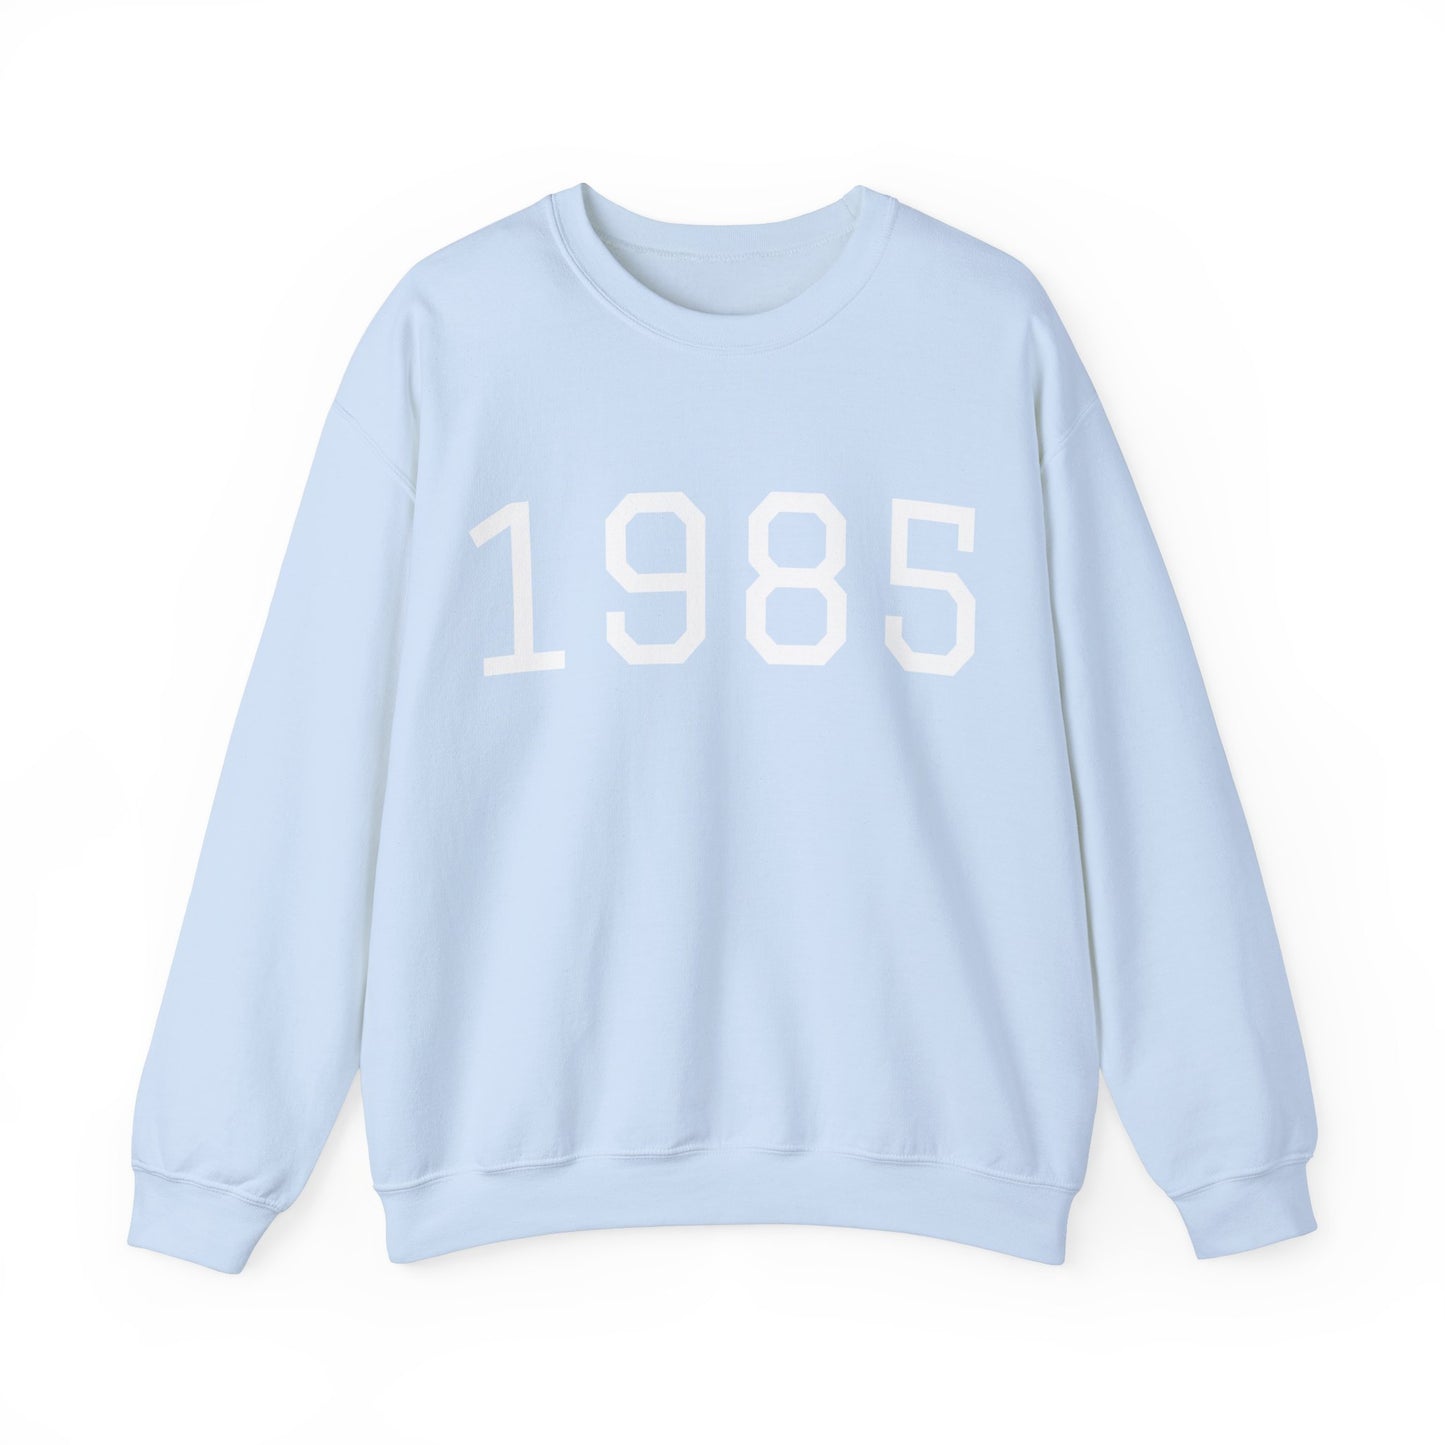 1985 College Varsity Birth Year Sweatshirt (Unisex)